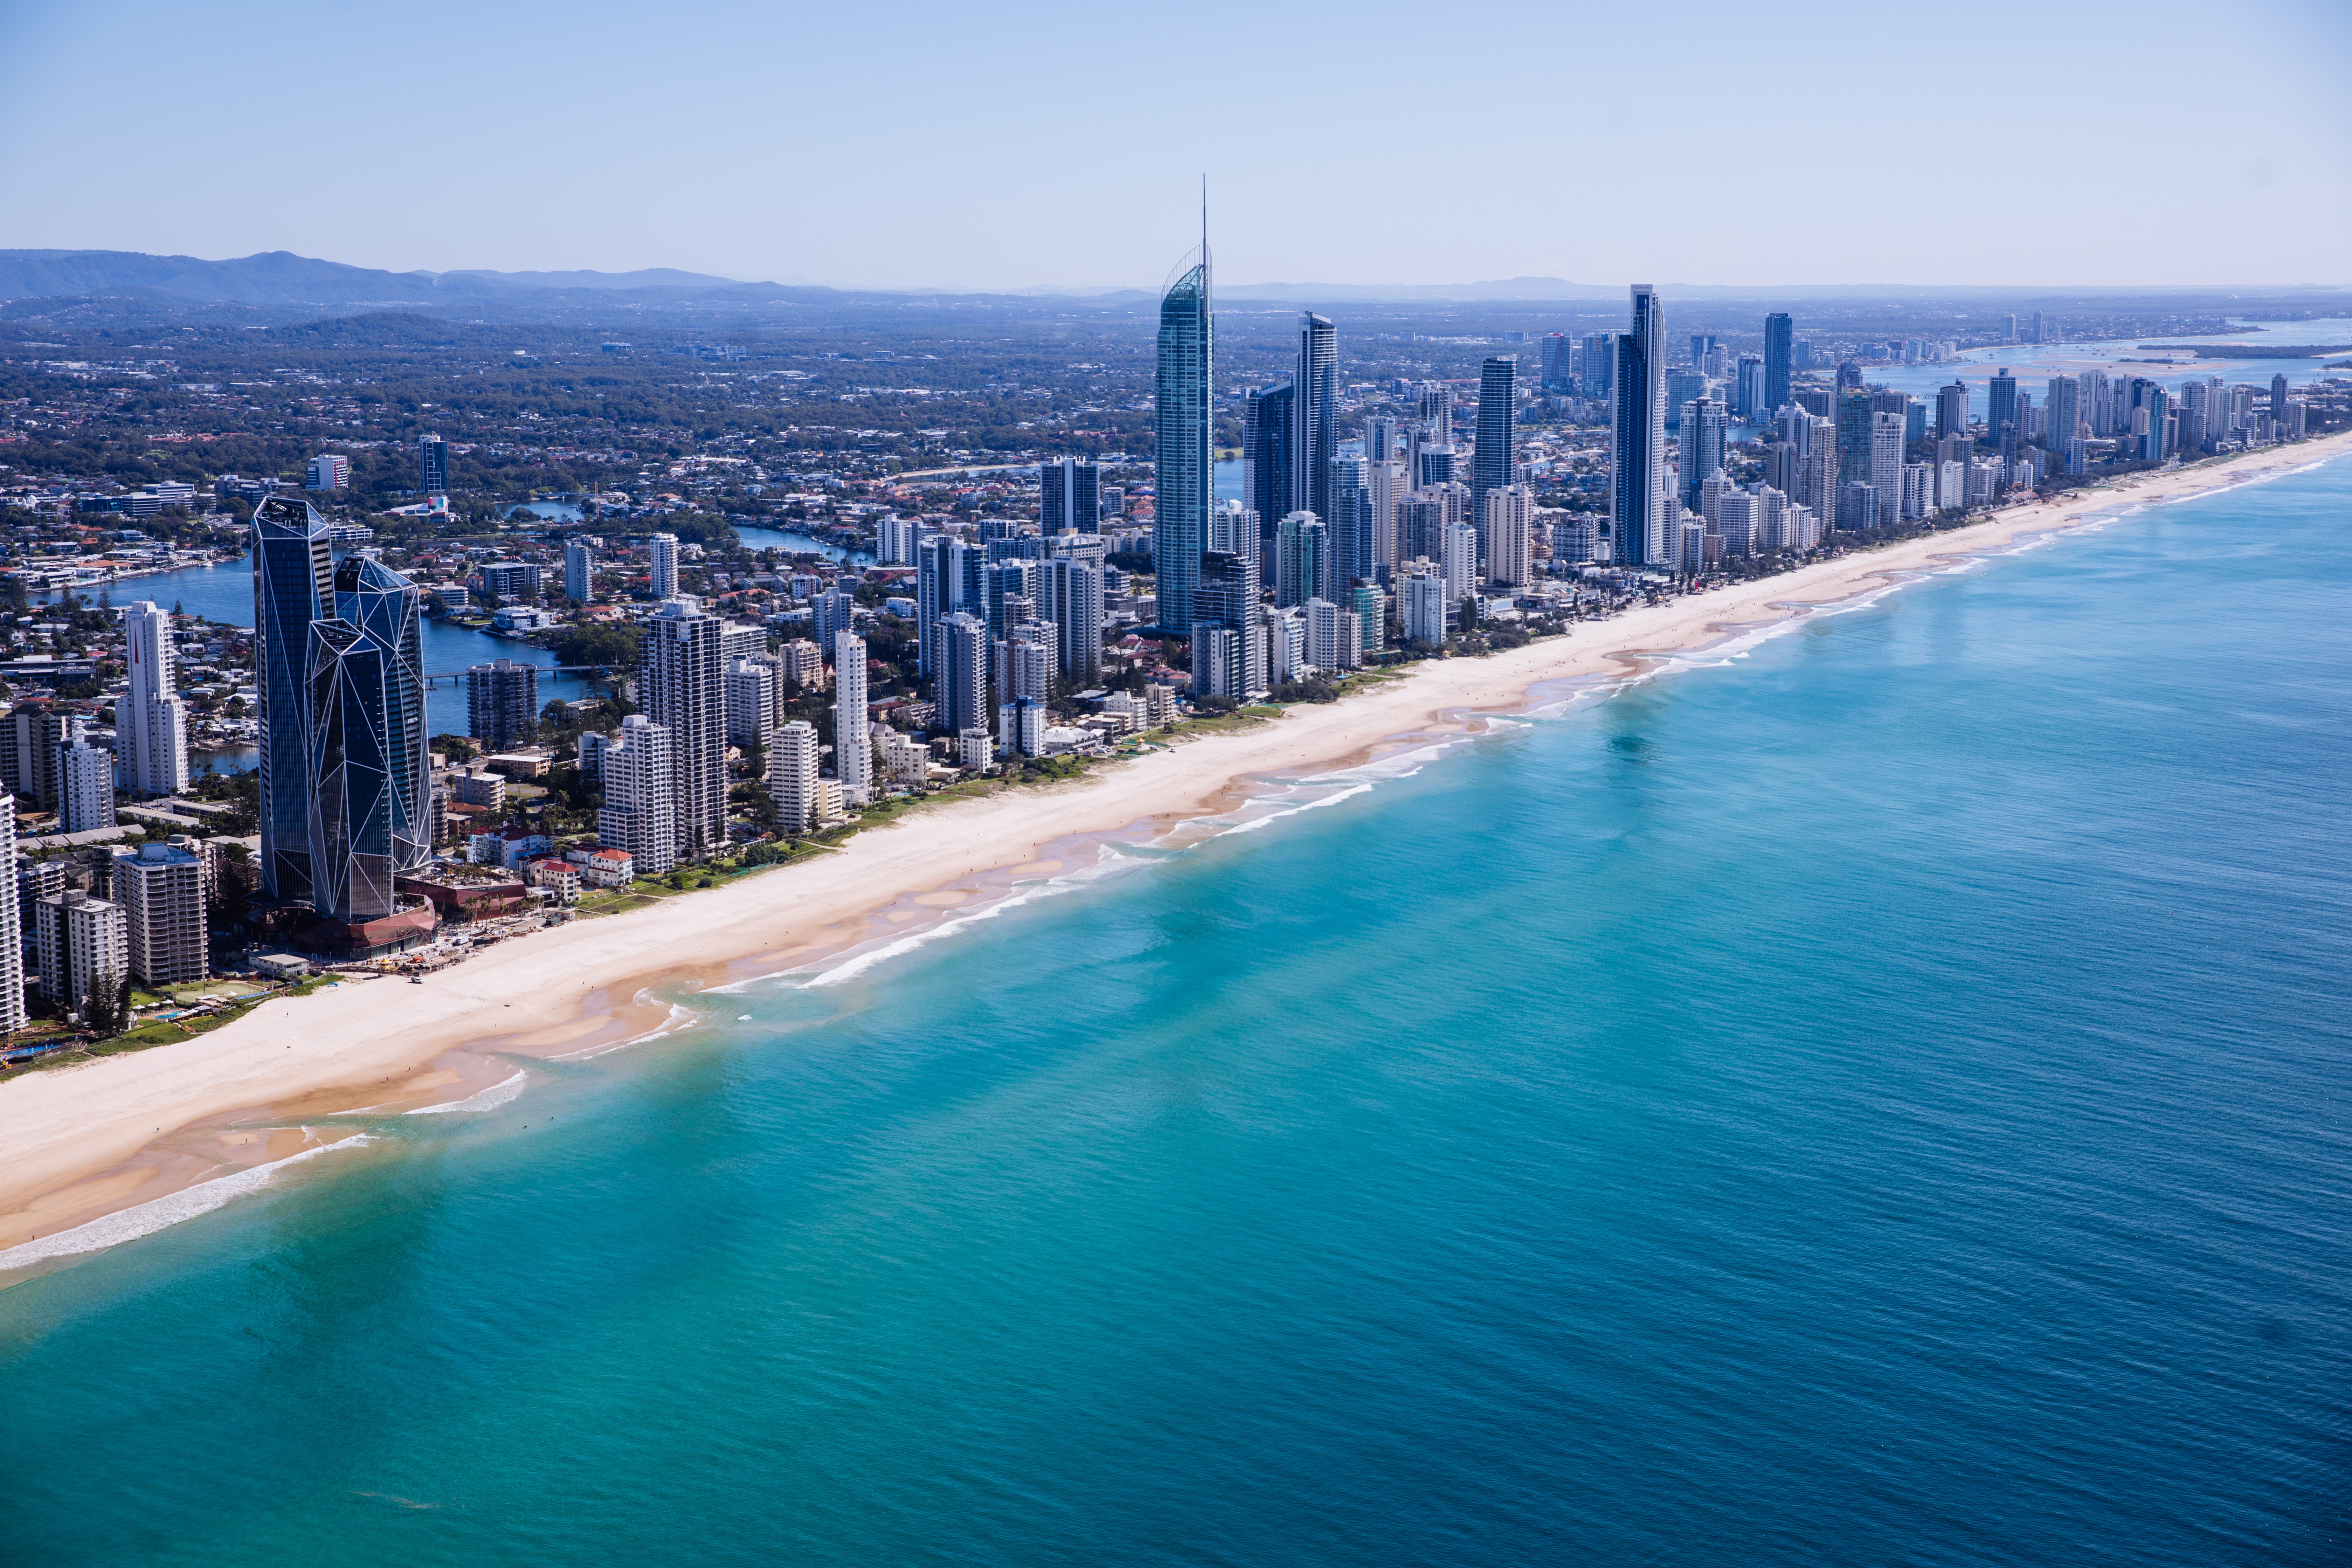 Buying property on Australia's Gold Coast